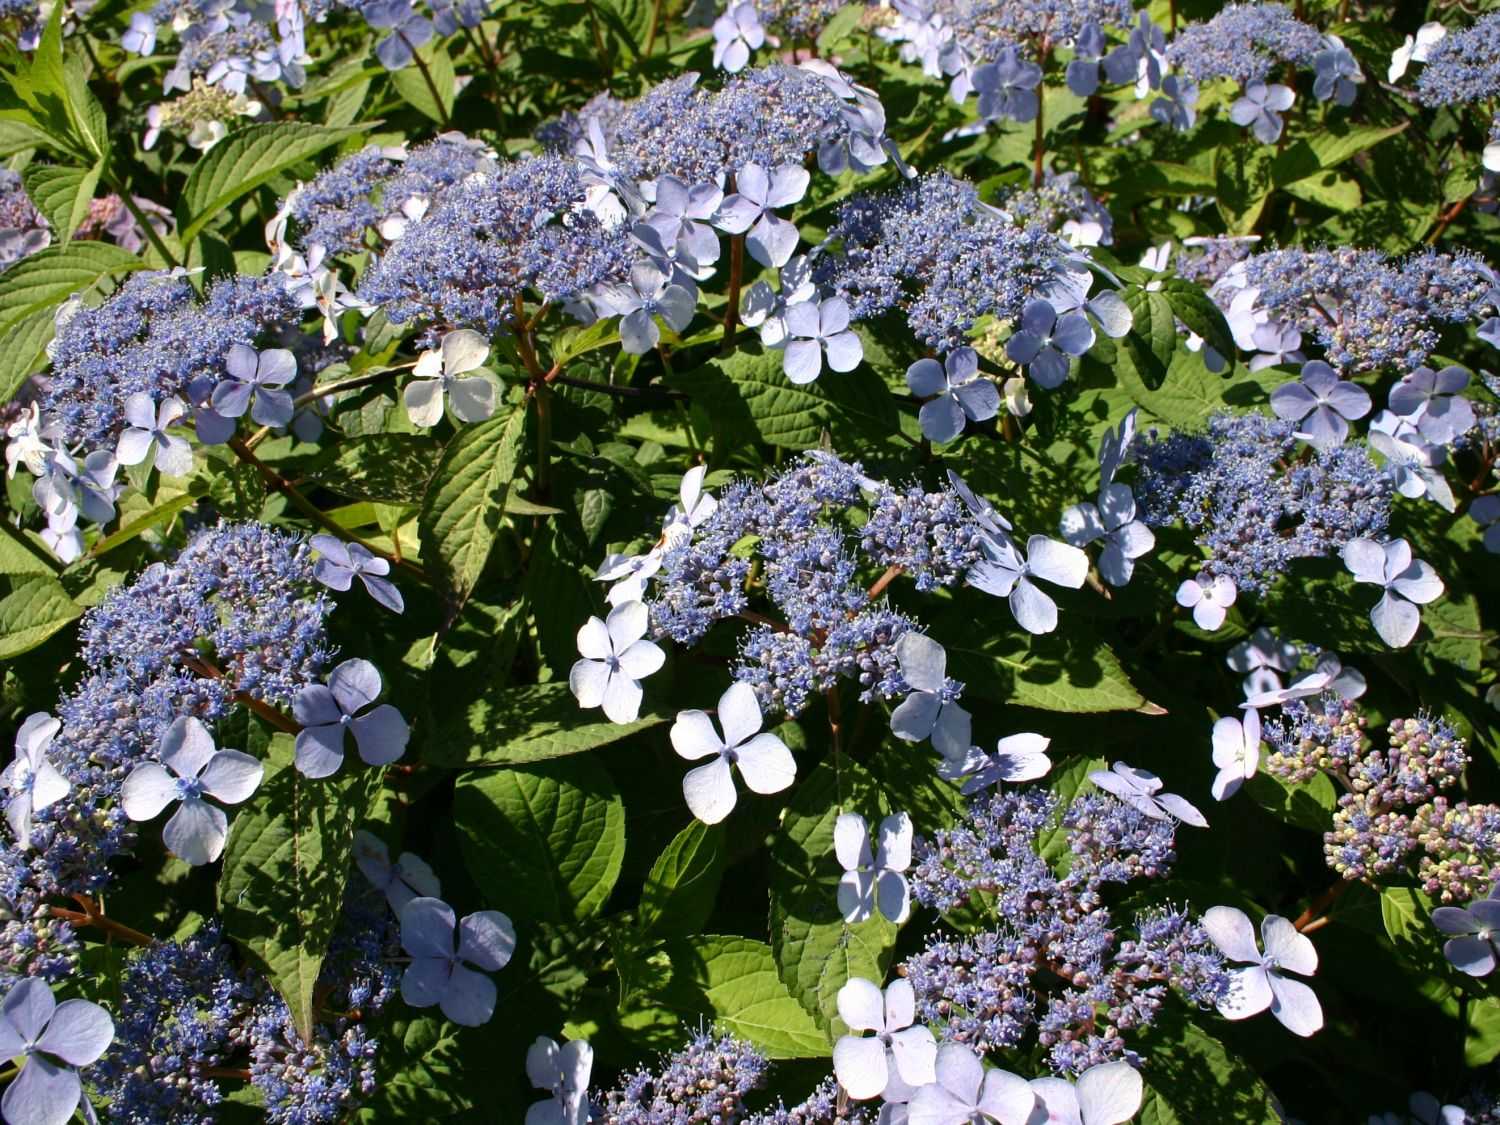 Голубые гортензии (блю): как ухаживать за крупнолистными сортами с синими цветами